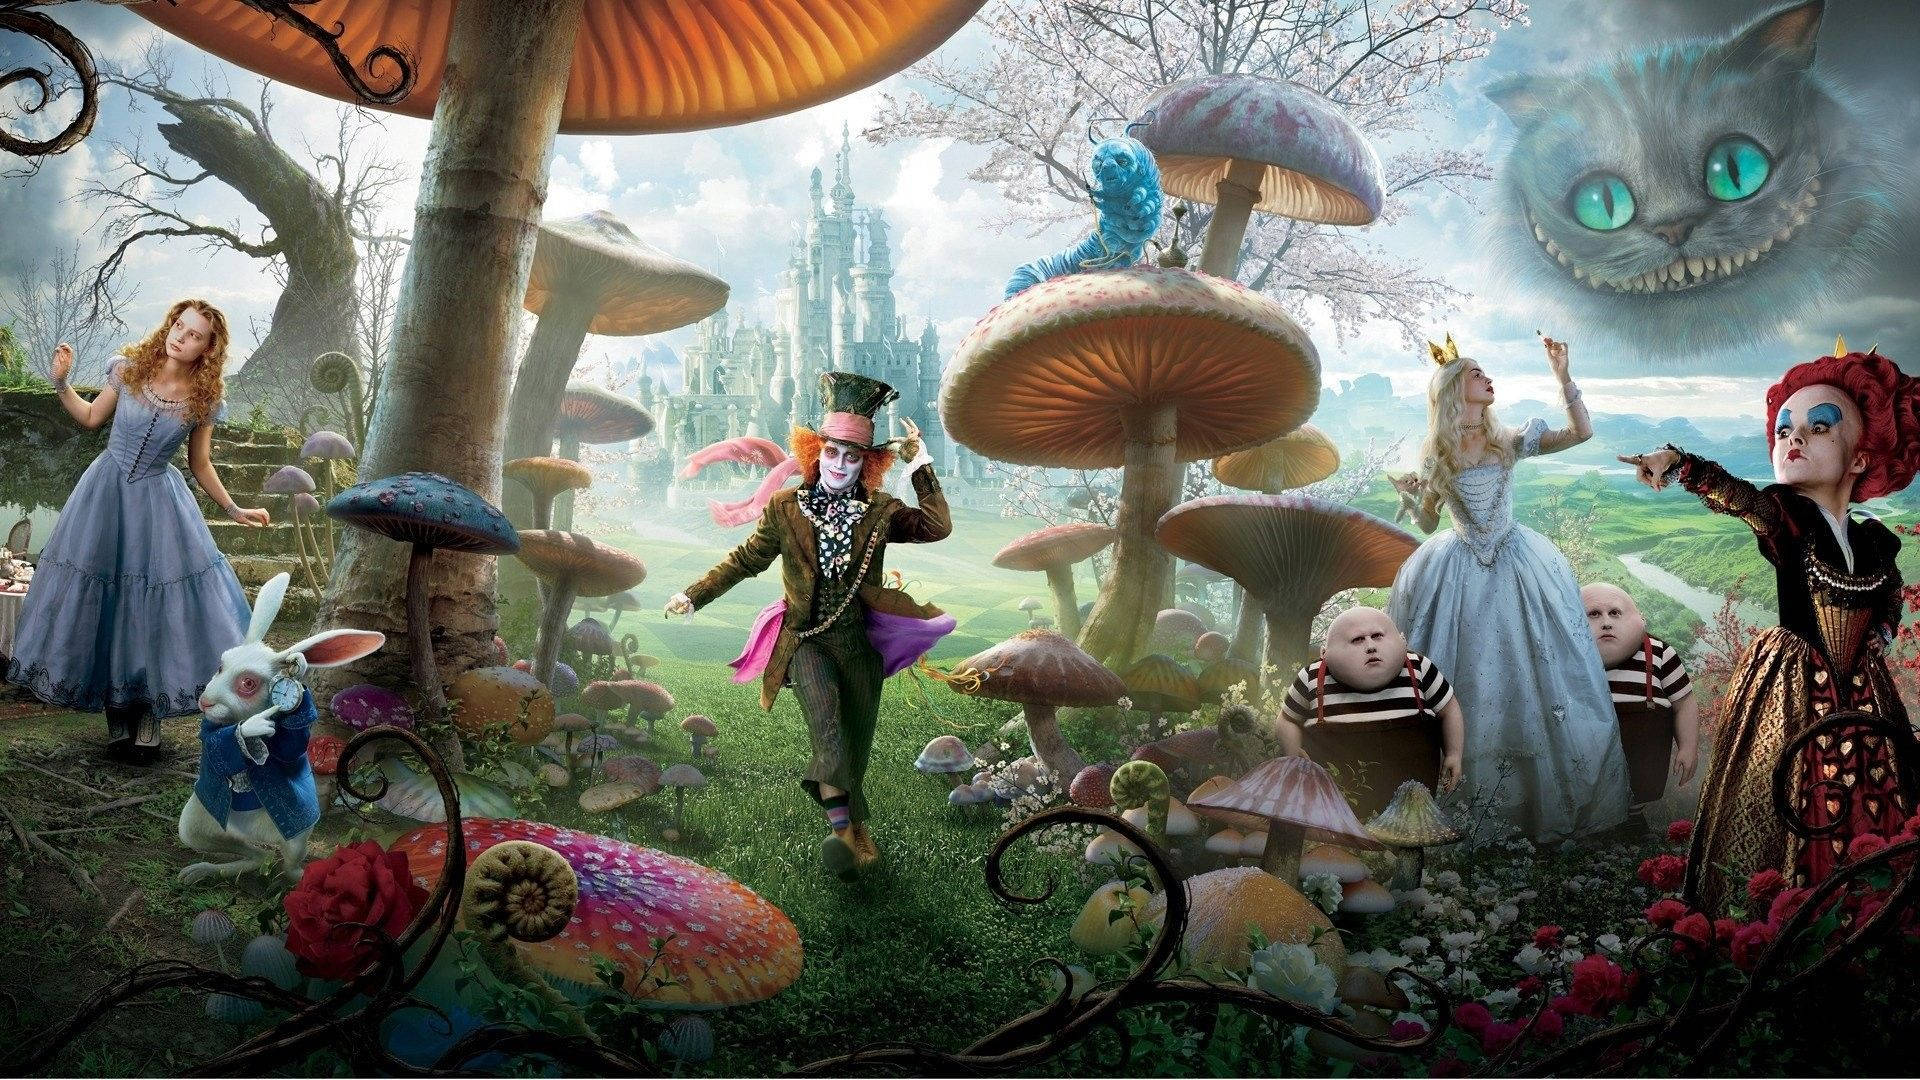 100+] Alice In Wonderland Wallpapers 